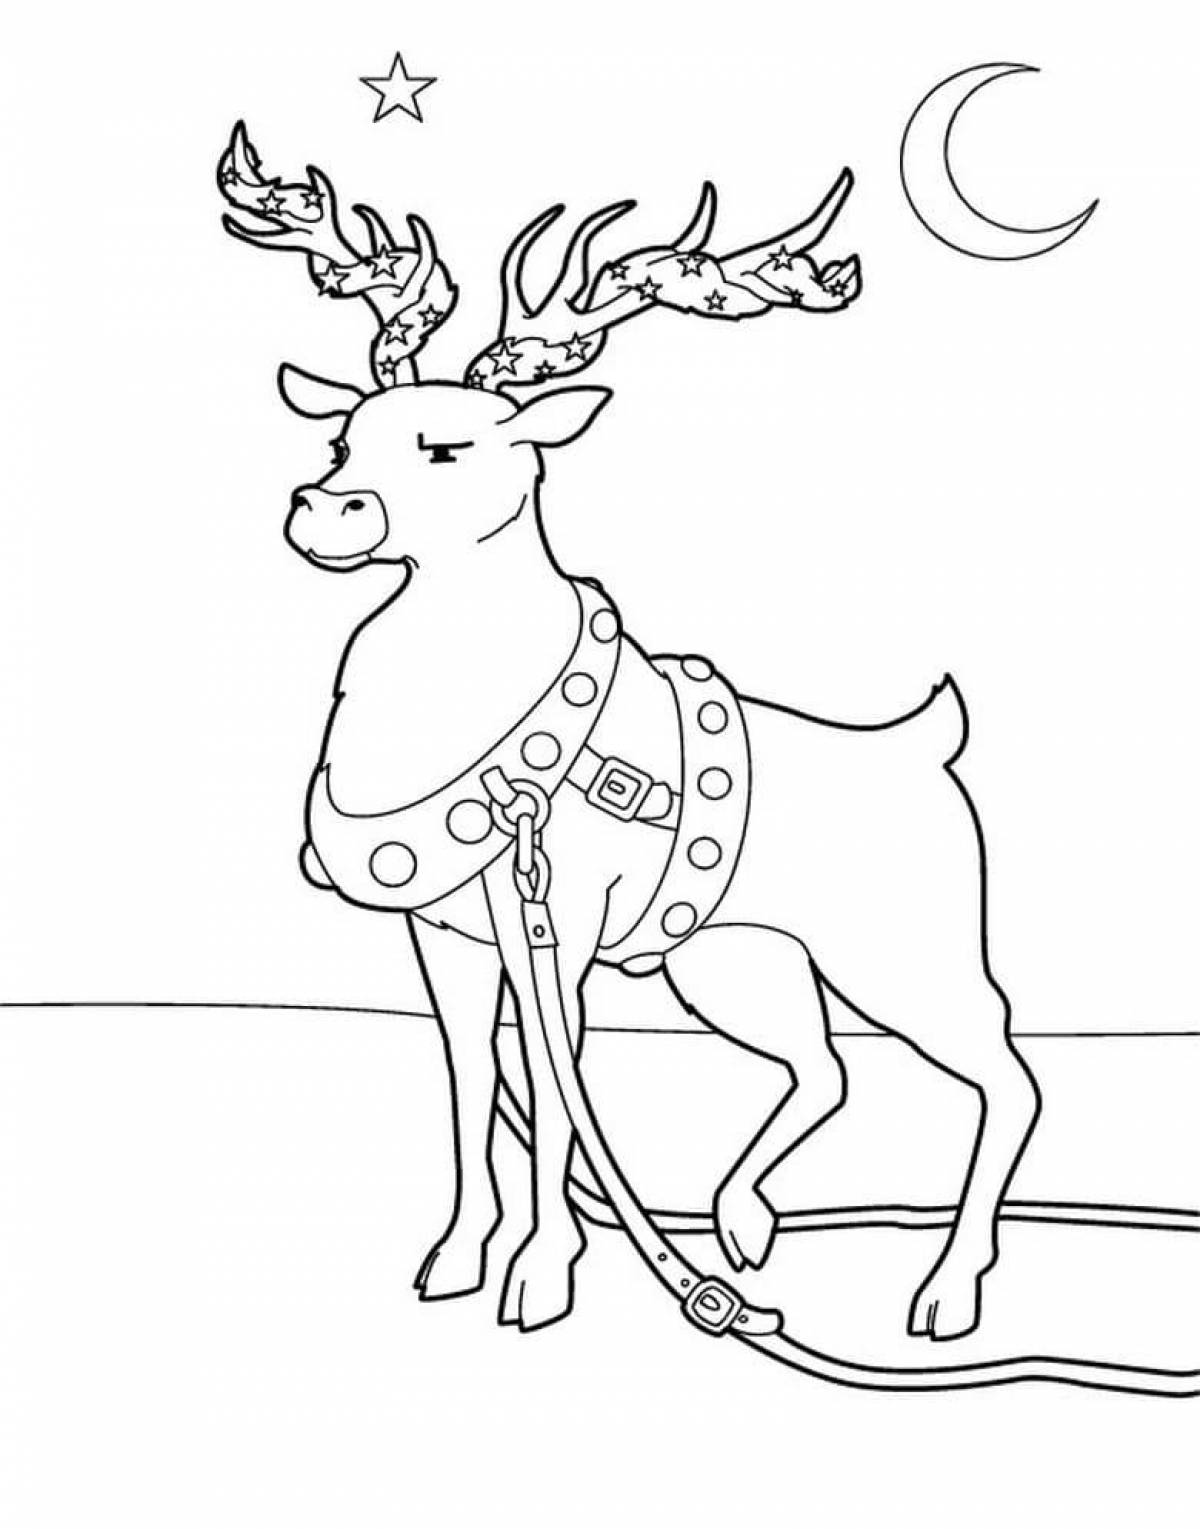 Rampant Christmas deer coloring book